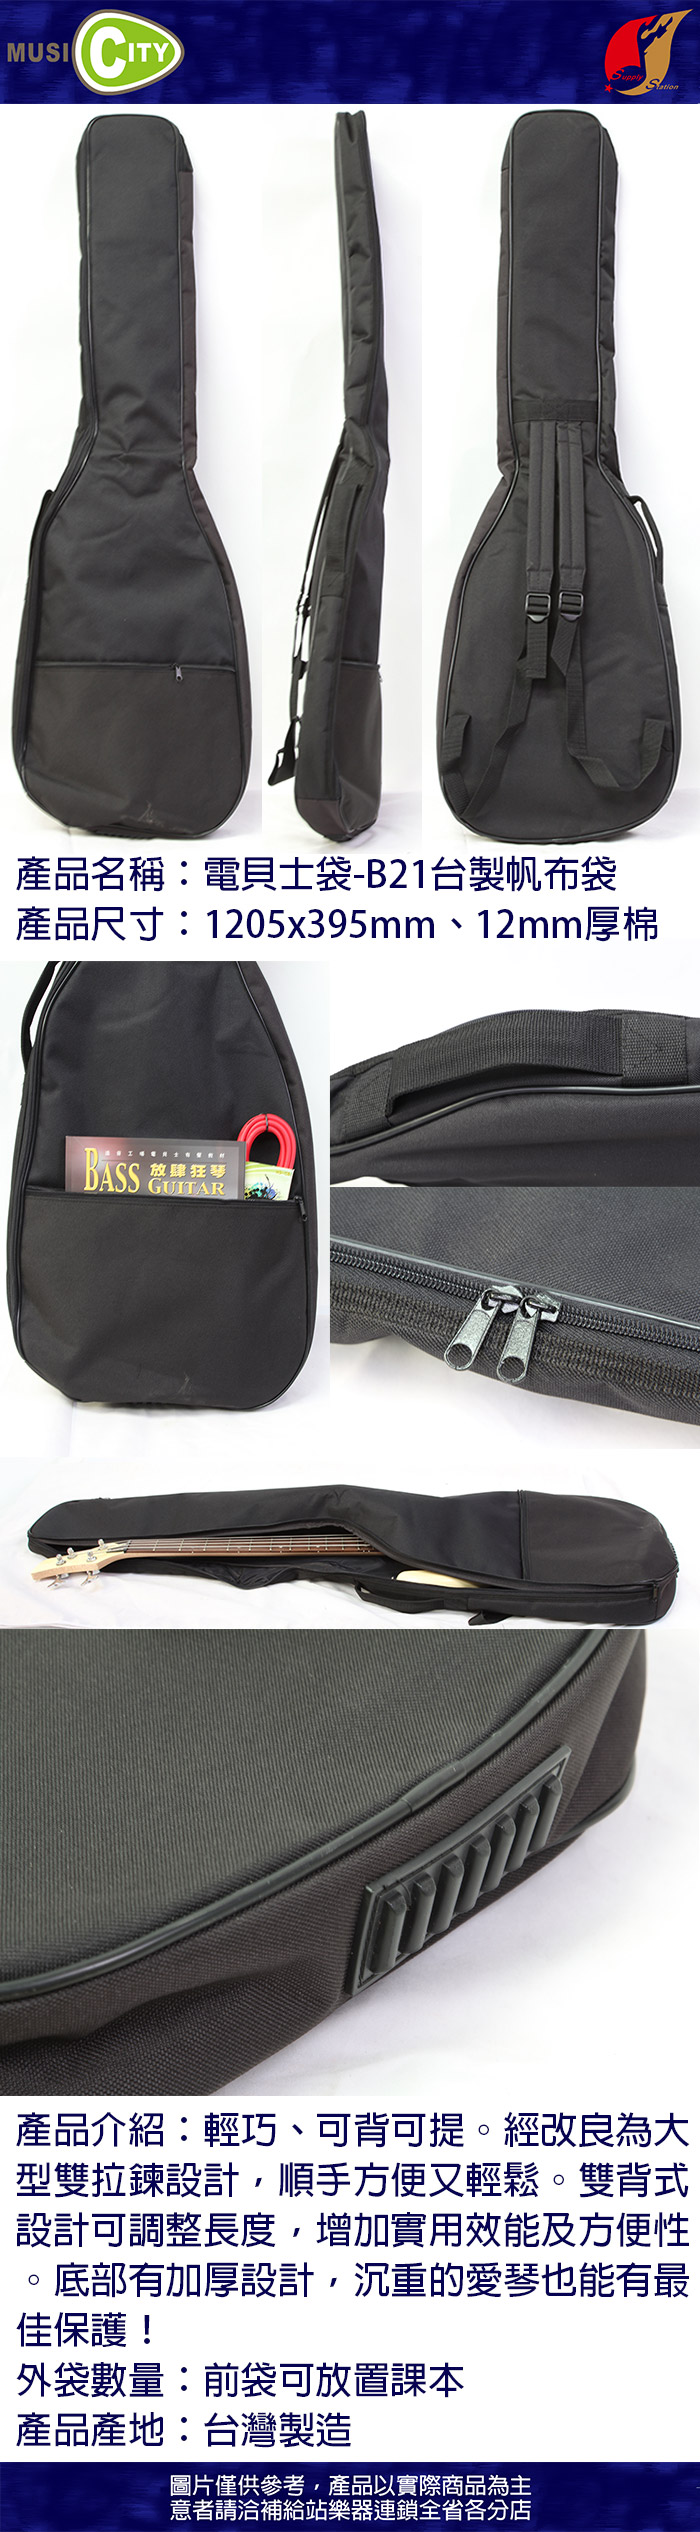 台灣製電貝士袋 12mm